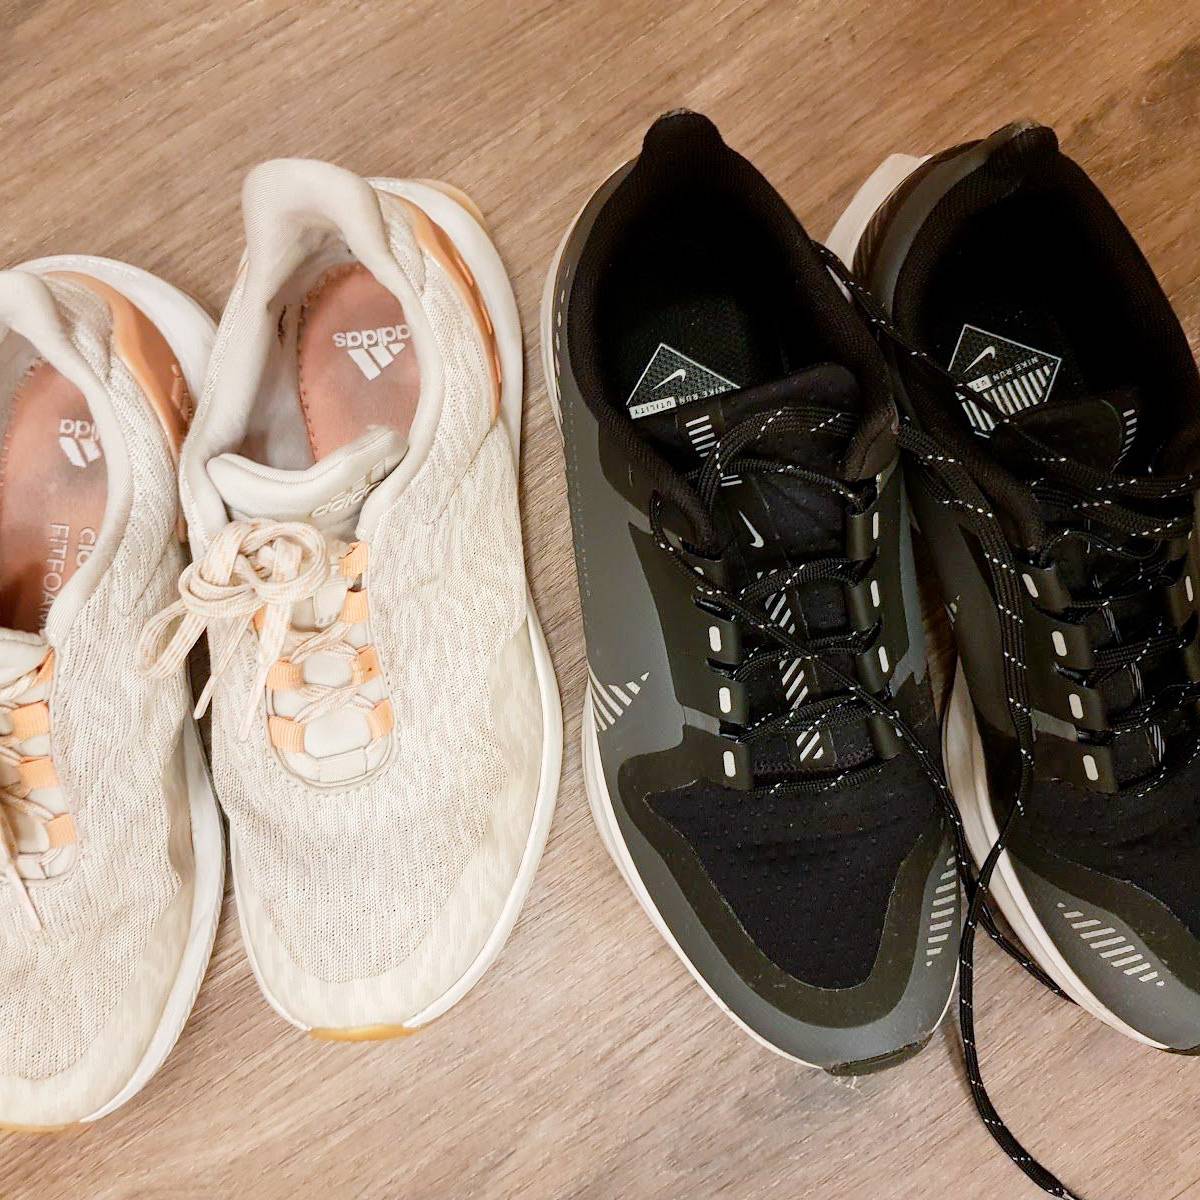 Слева кроссовки для&nbsp;силовых тренировок, справа — для&nbsp;бега